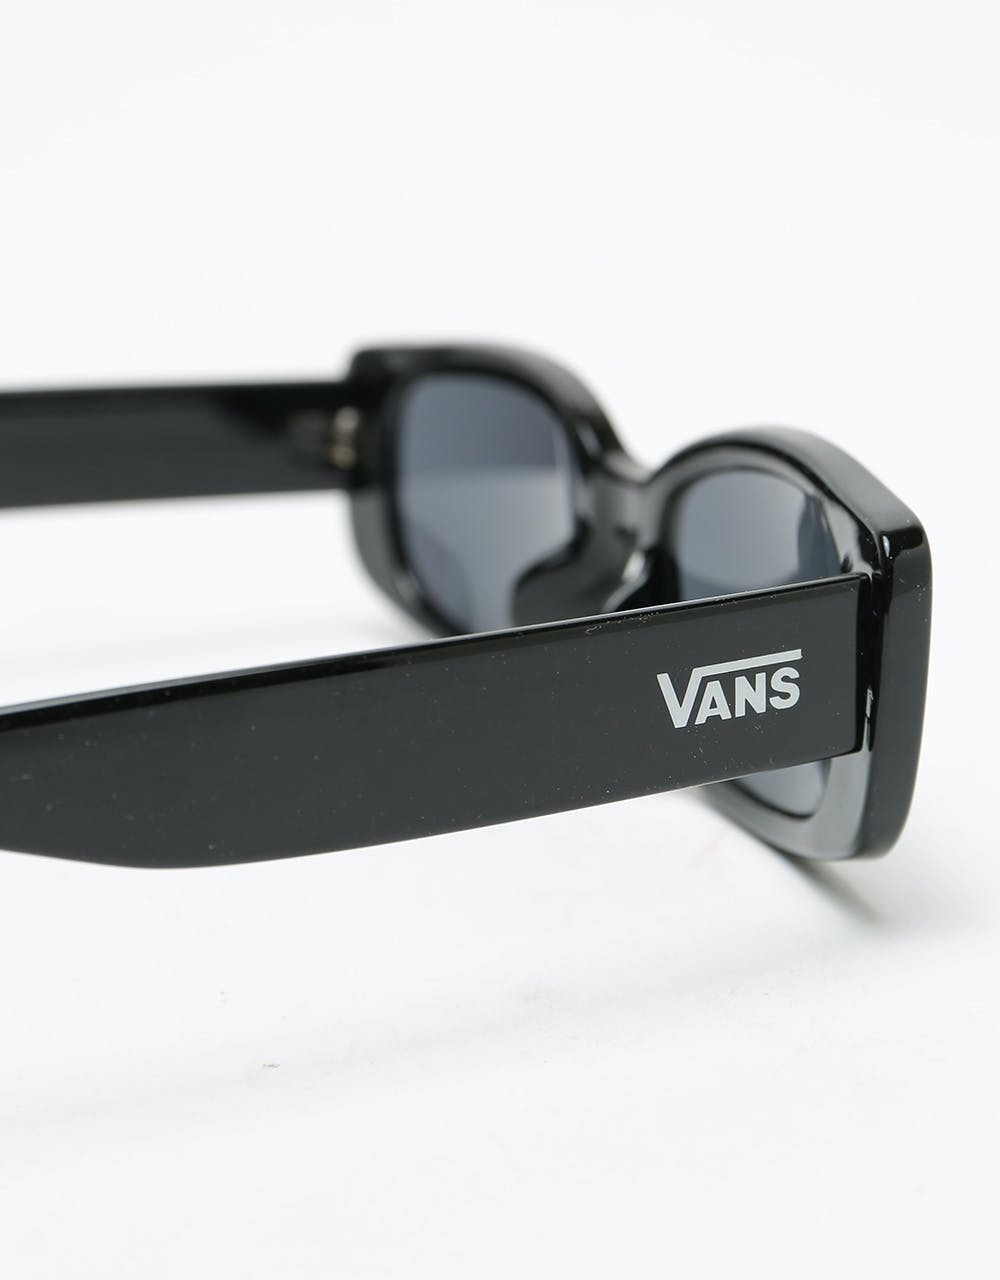 Vans Bomb Sunglasses - Black